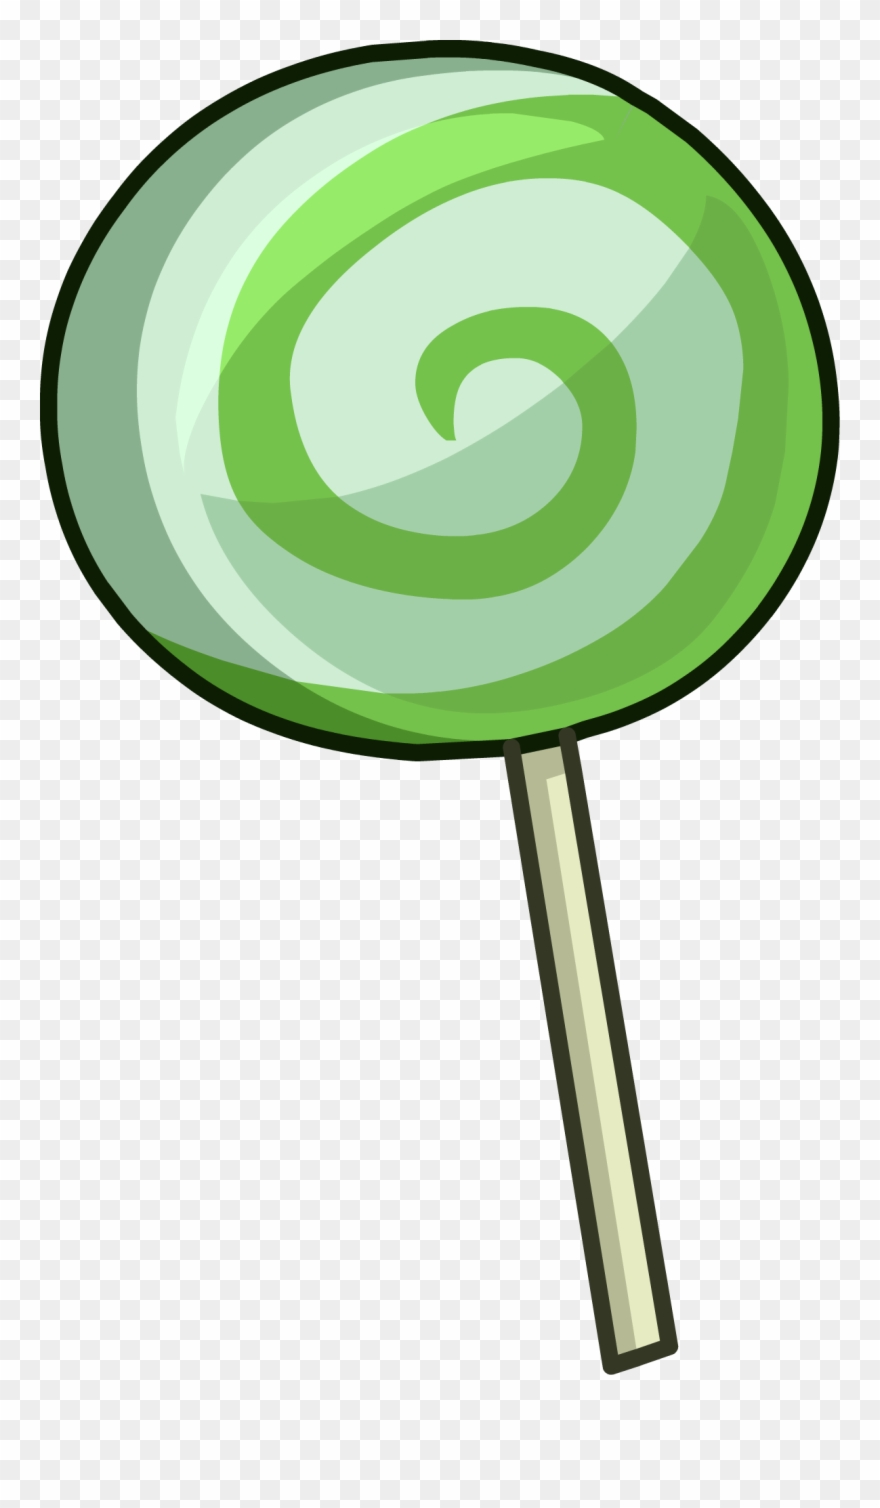 lollipop clipart green